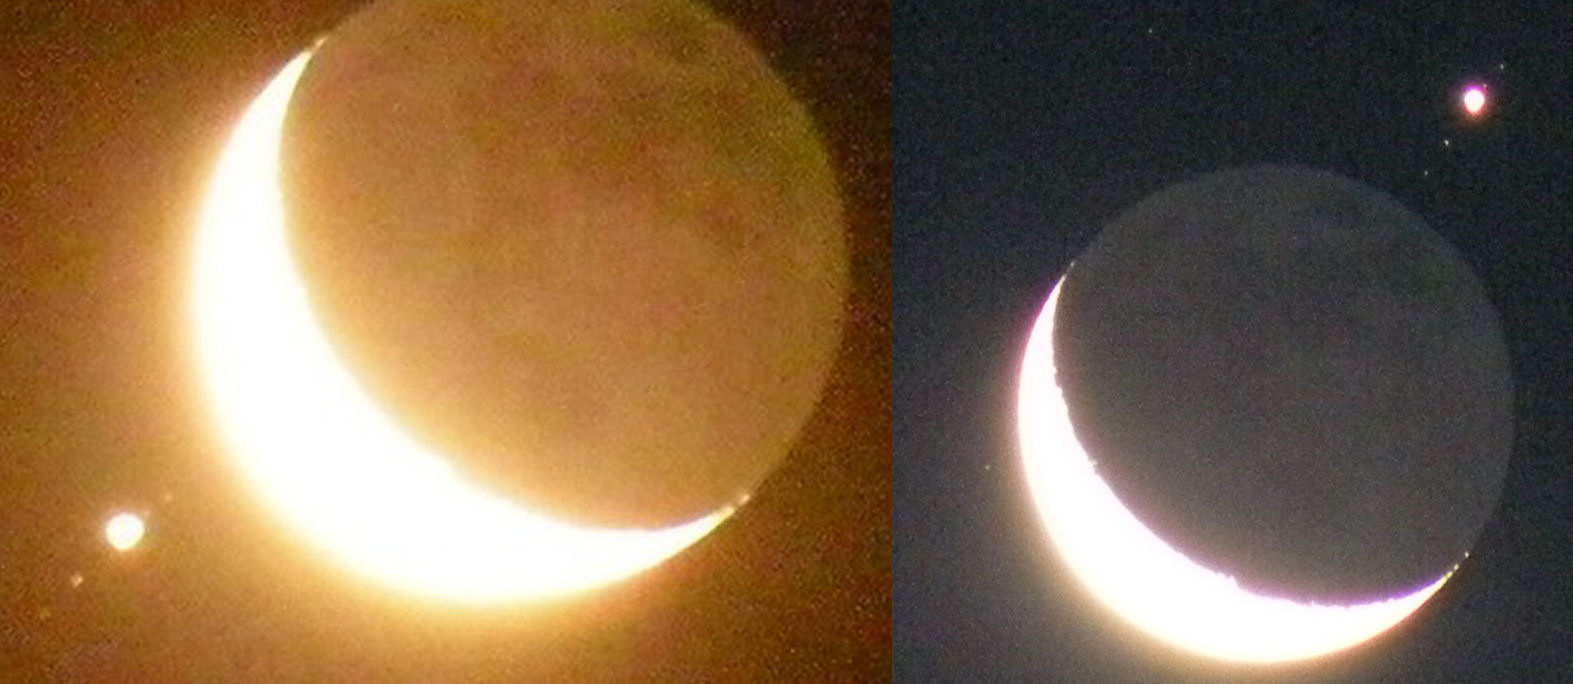 Αριστερά, λίγο πριν η Σελήνη σκεπάσει τον Δία και τους δορυφόρους του, δεξιά μόλις έχουν όλοι αποκαλυφθεί.